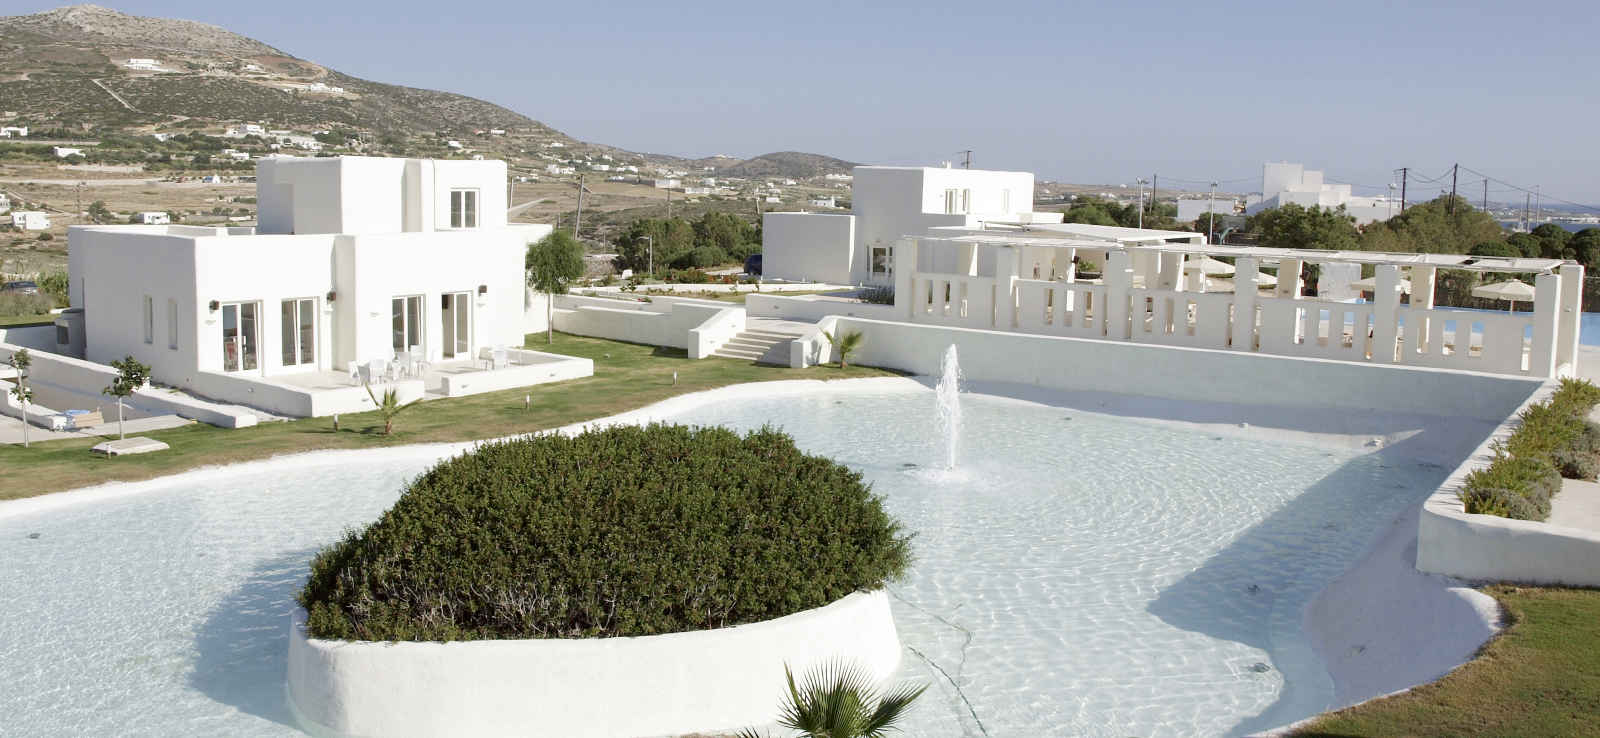 Grèce - Iles grecques - Les Cyclades - Paros - Hôtel Archipelagos Resort 5*